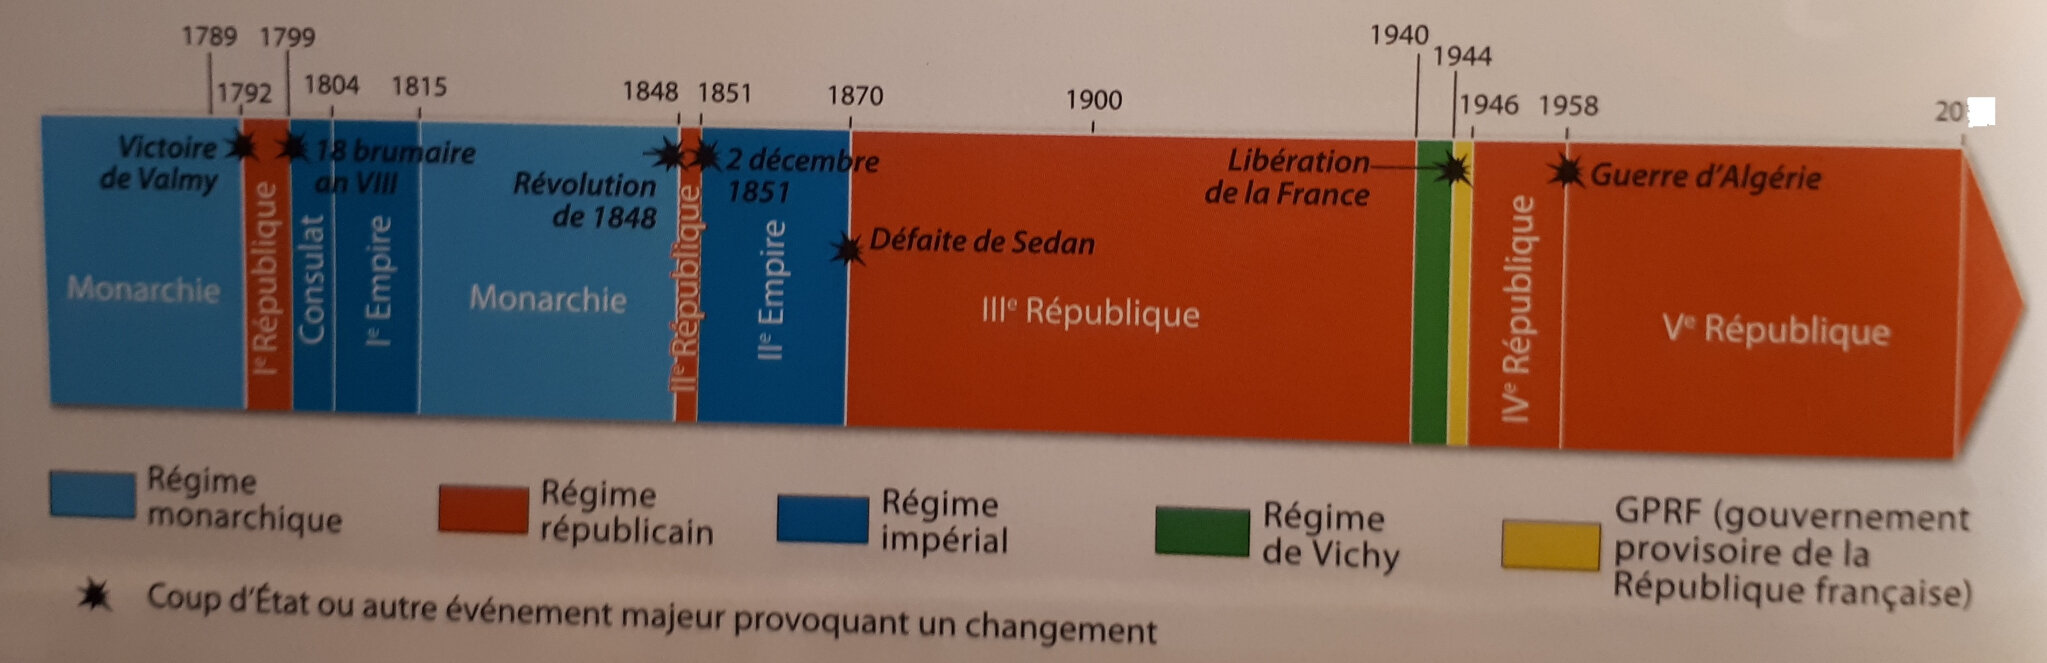 La République En France Blog De Lettres Histoire Du Lp Costebelle